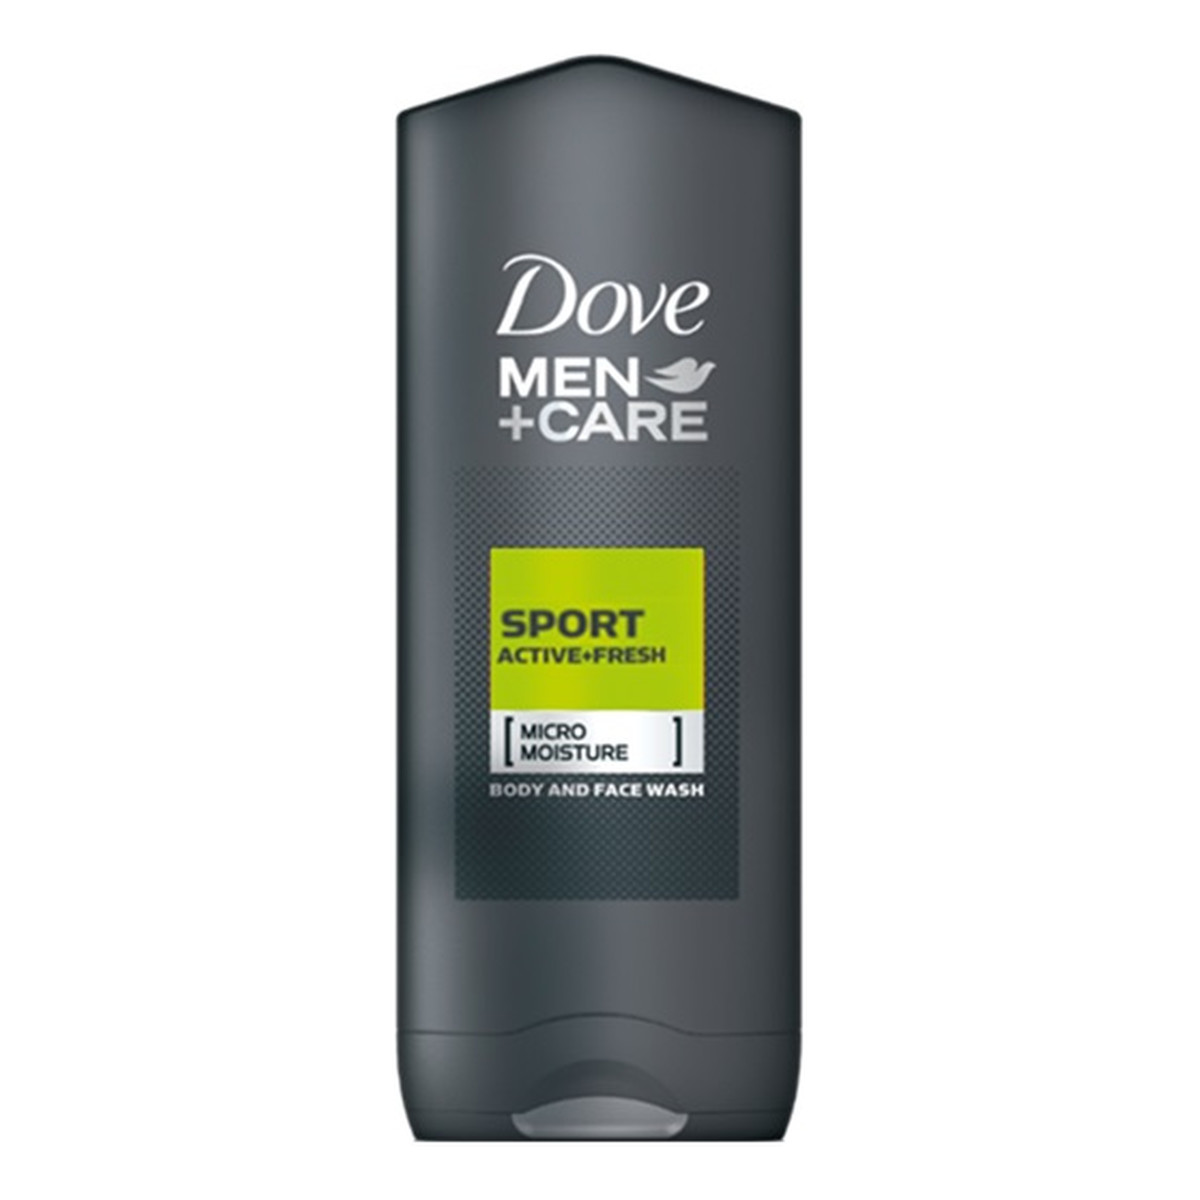 Dove Men+Care żel pod prysznic do mycia ciała i twarzy Active Fresh 250ml